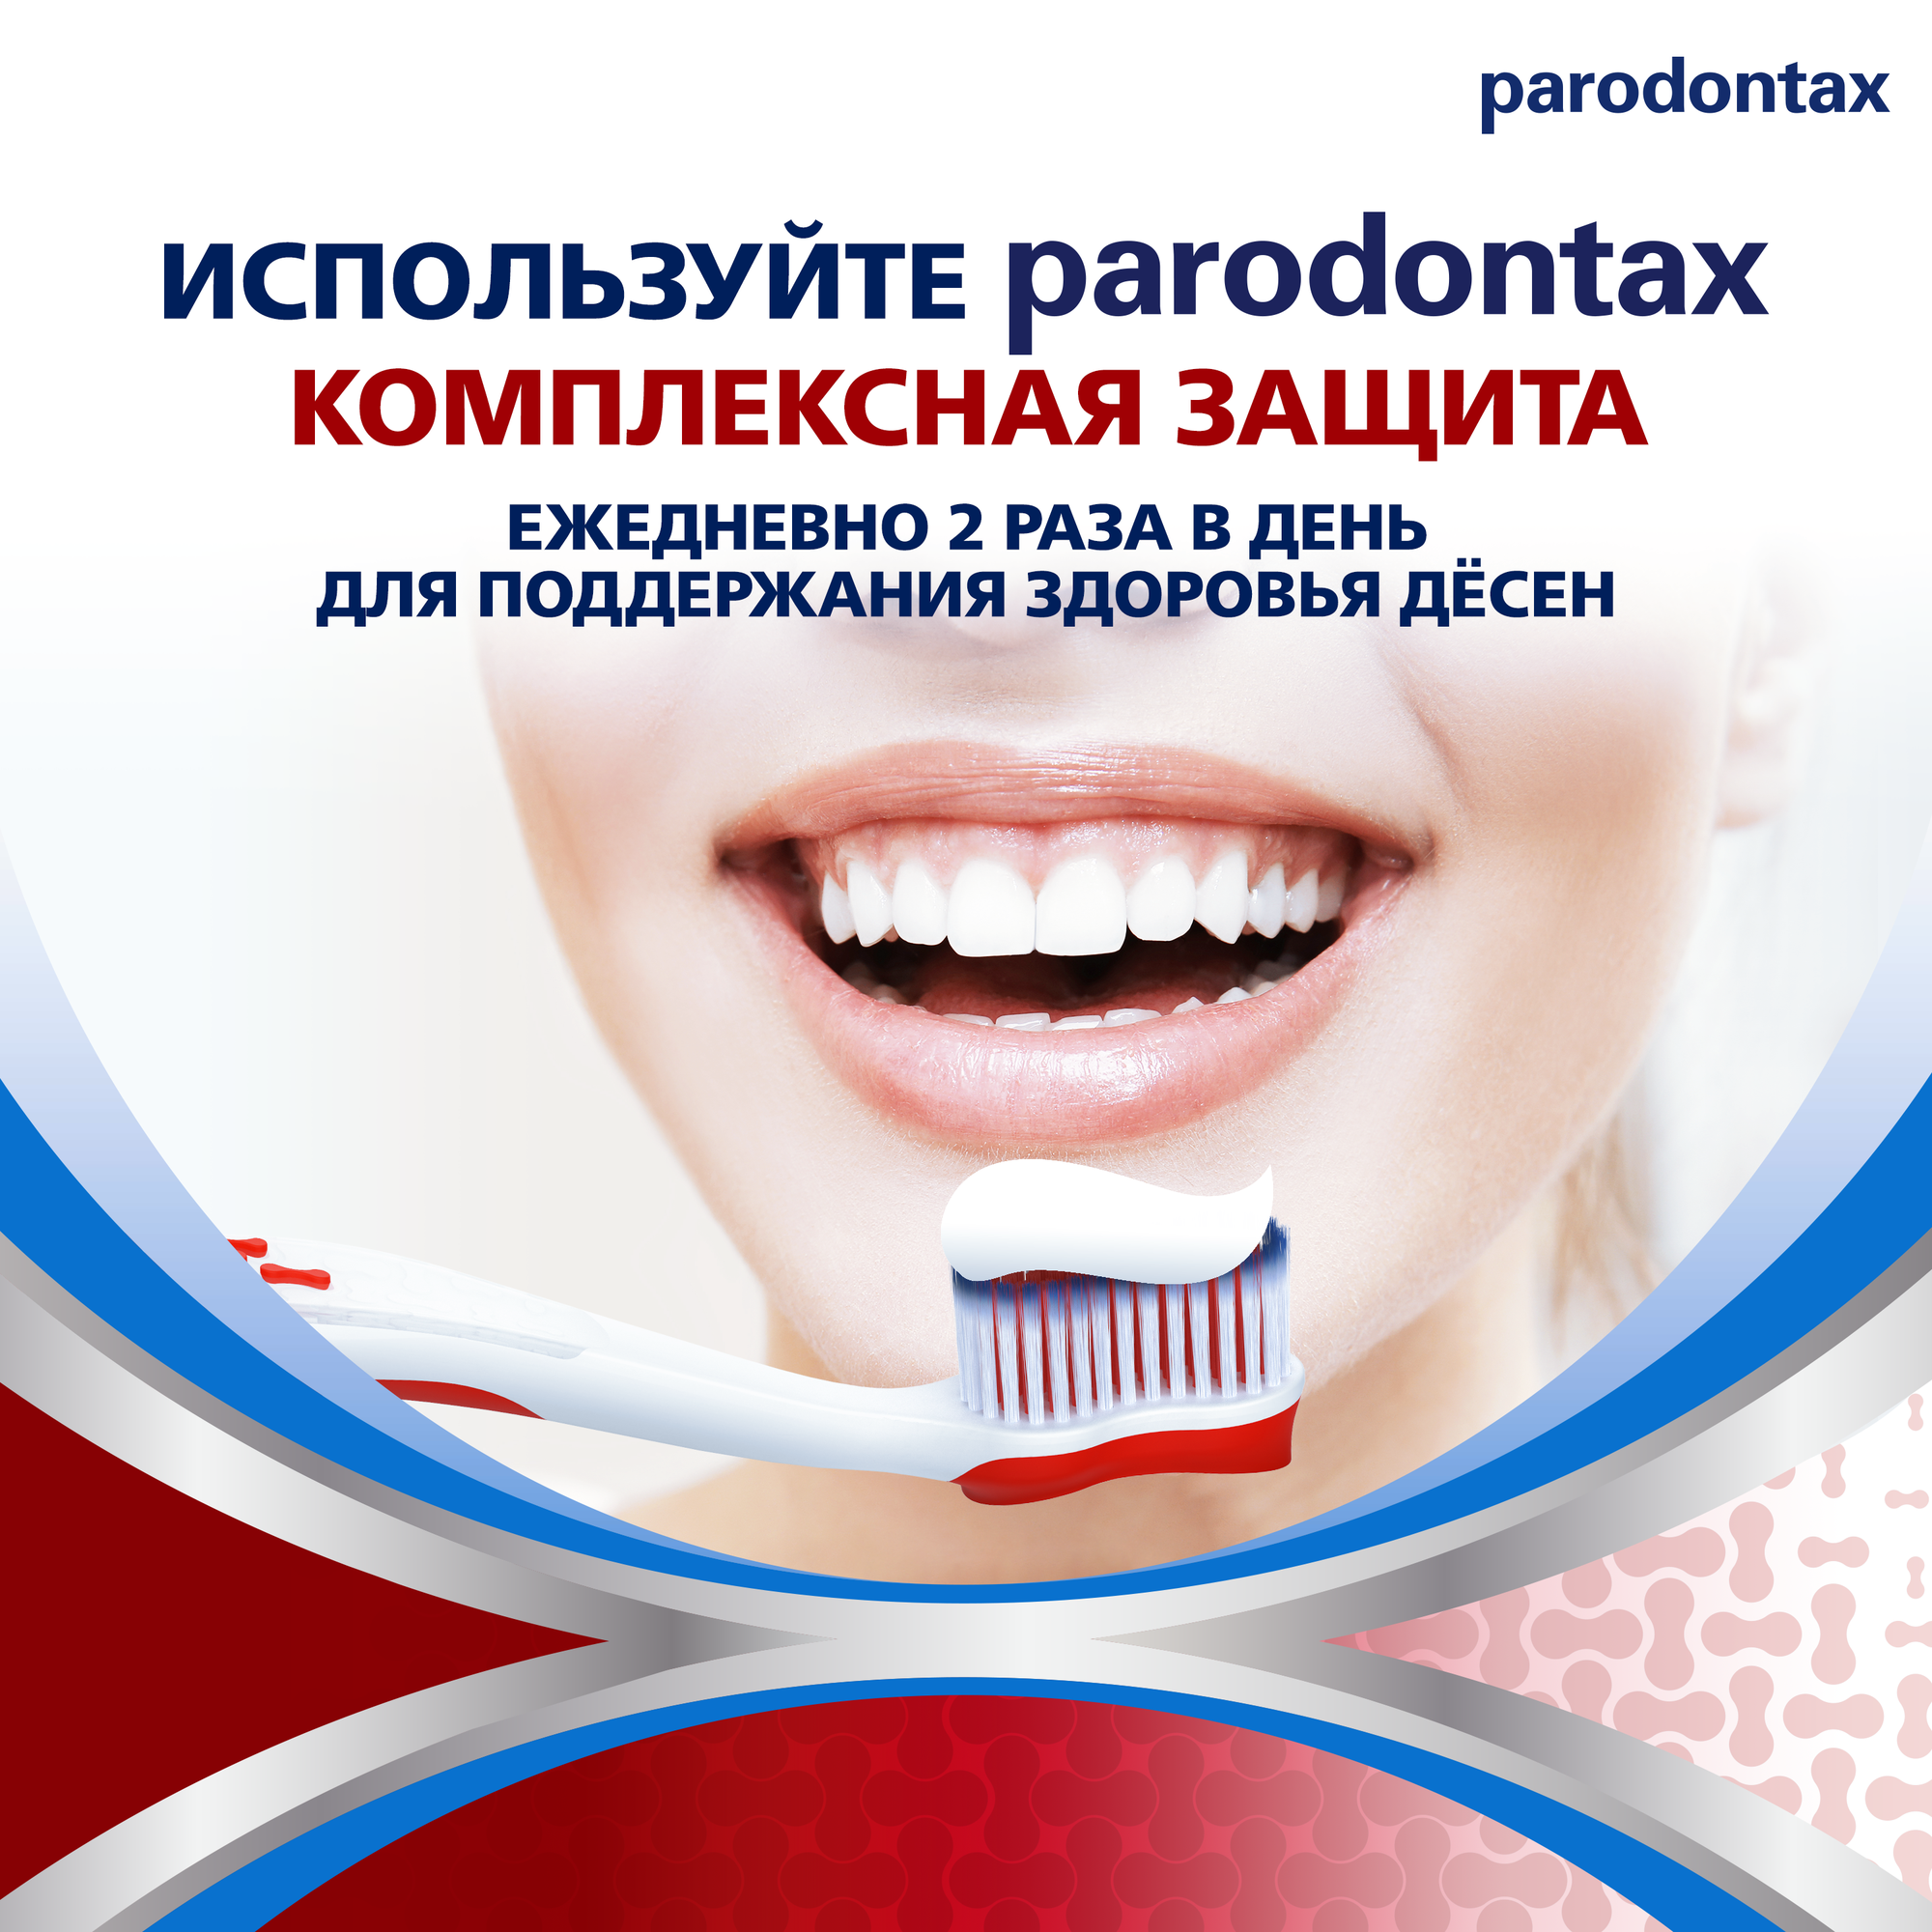 Зубная паста parodontax Комплексная Защита, от кровоточивости десен для укрепления зубов и поддержания здоровья десен с фтором, 50мл*2шт